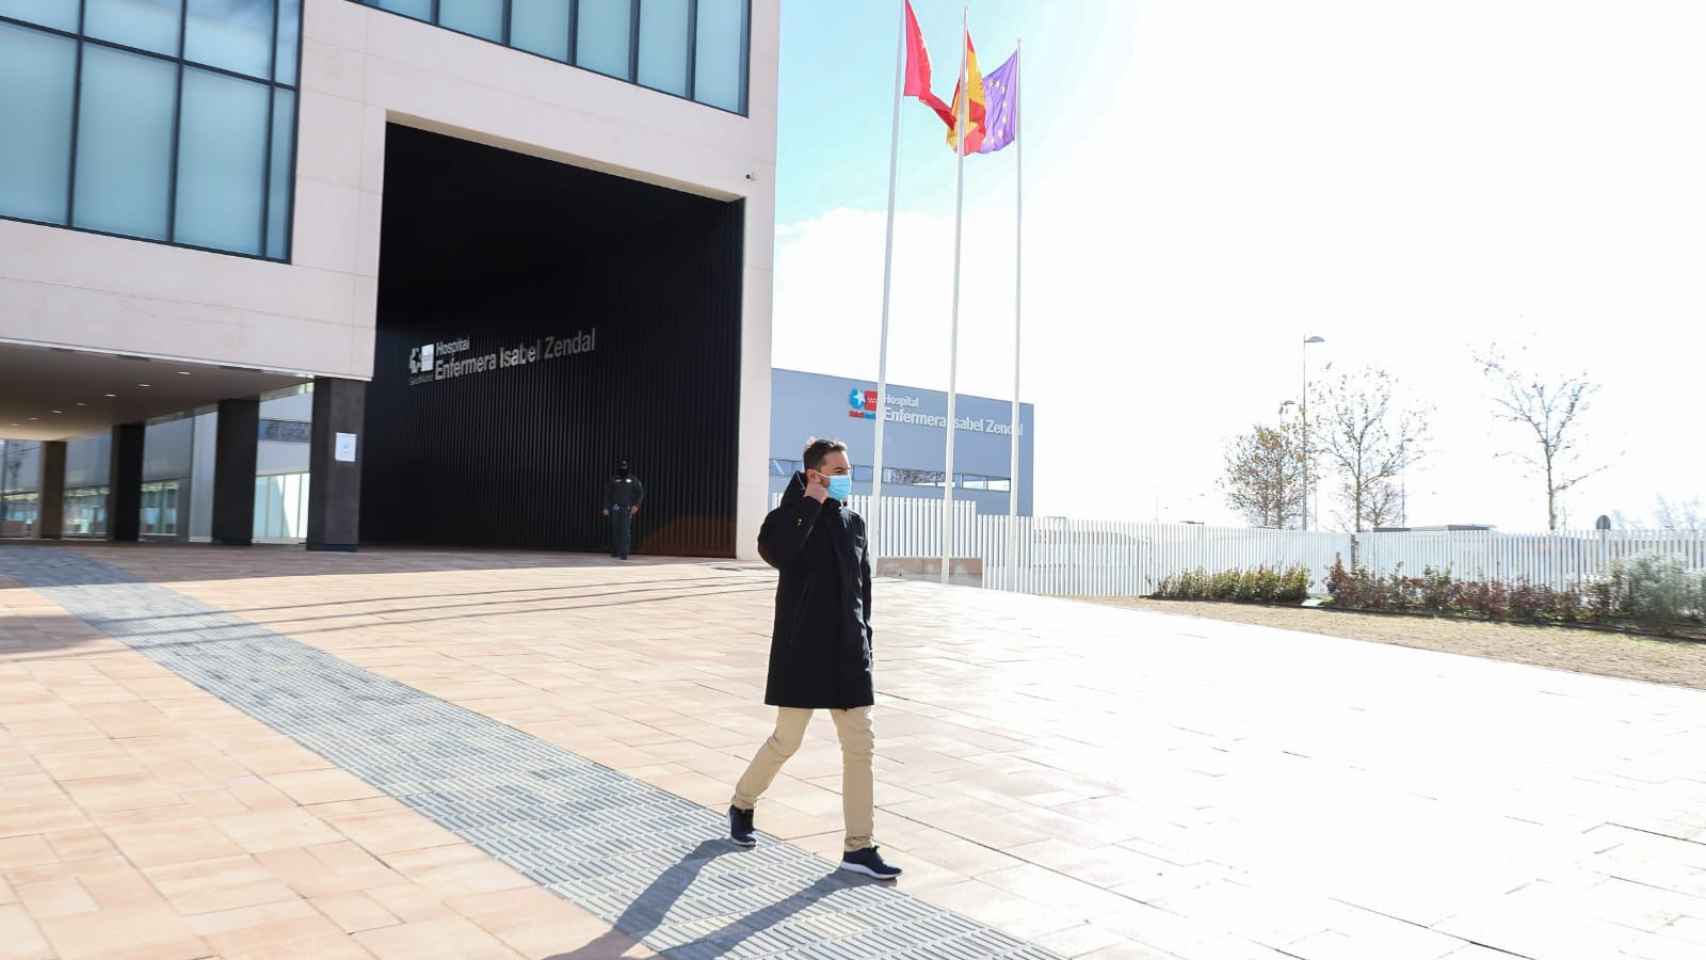 El Zendal, campo de batalla contra Ayuso: Más Madrid y PSOE critican su gestión y los contratos "a dedo" thumbnail